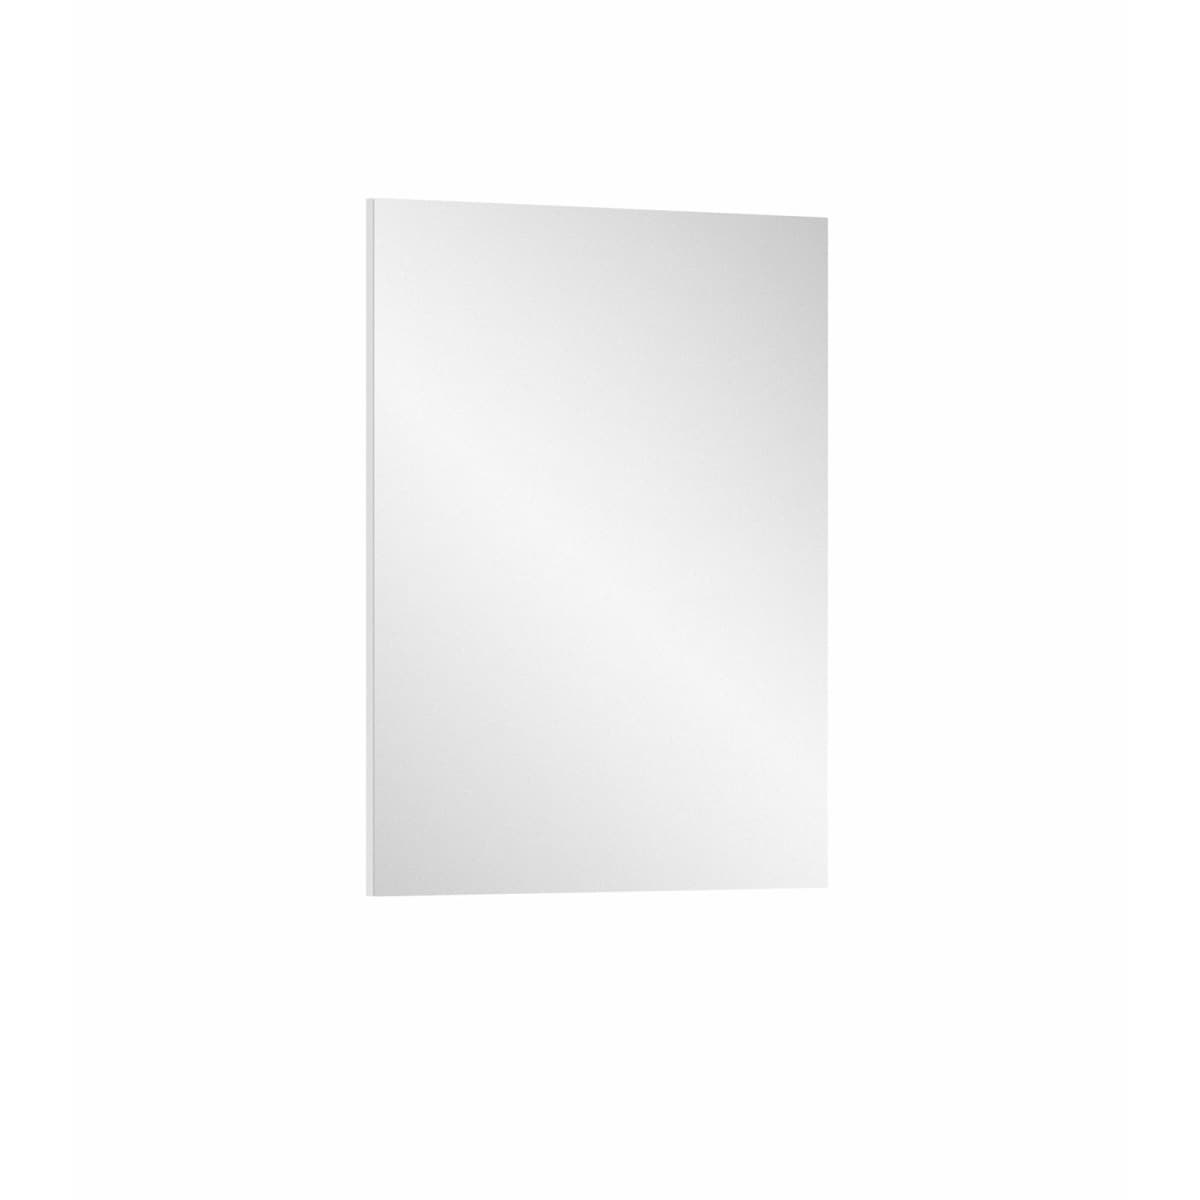 Spiegel Prego 55x71x2 cm weiß/spiegelglas